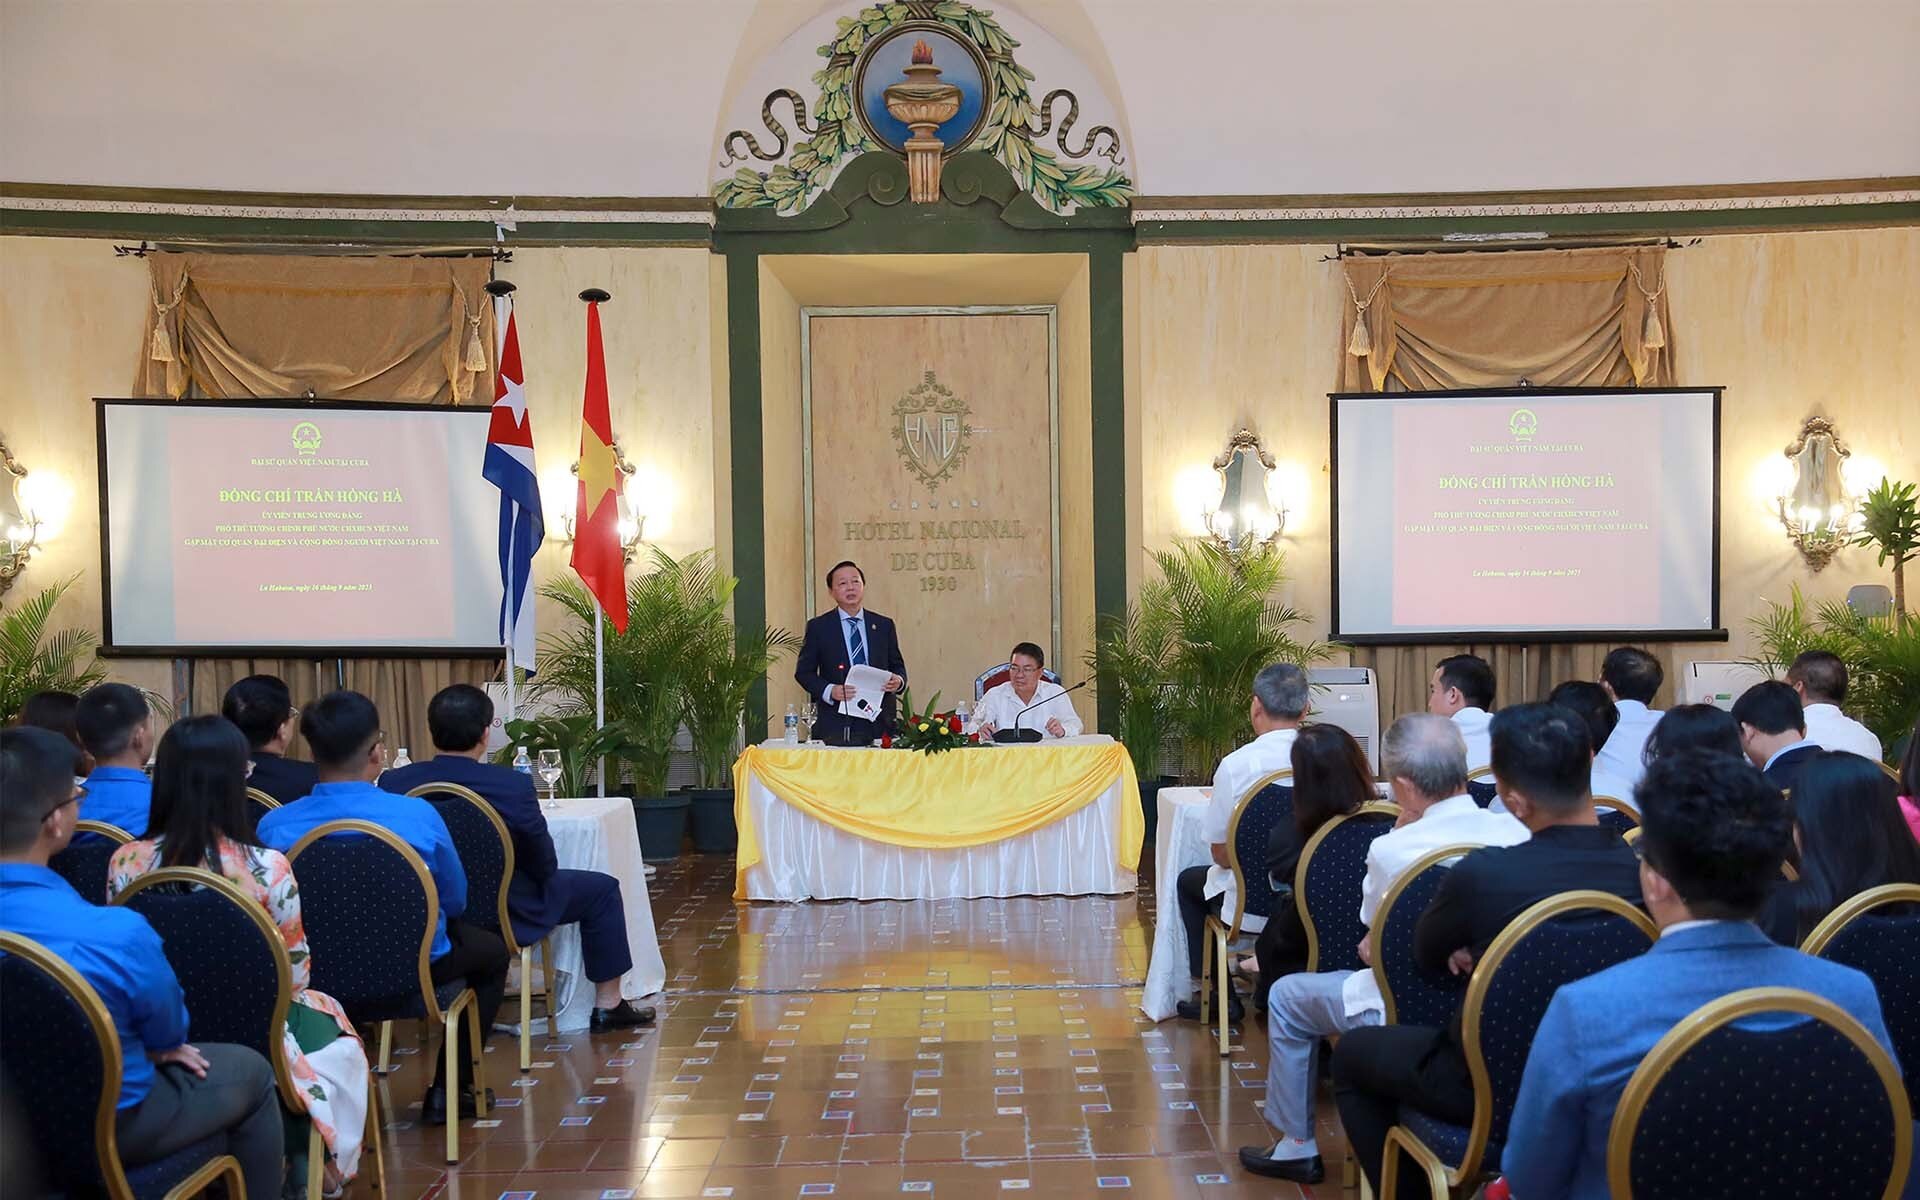 Ngoại giao kinh tế góp phần thắt chặt mối quan hệ hữu nghị, hợp tác đặc biệt giữa Việt Nam và Cuba